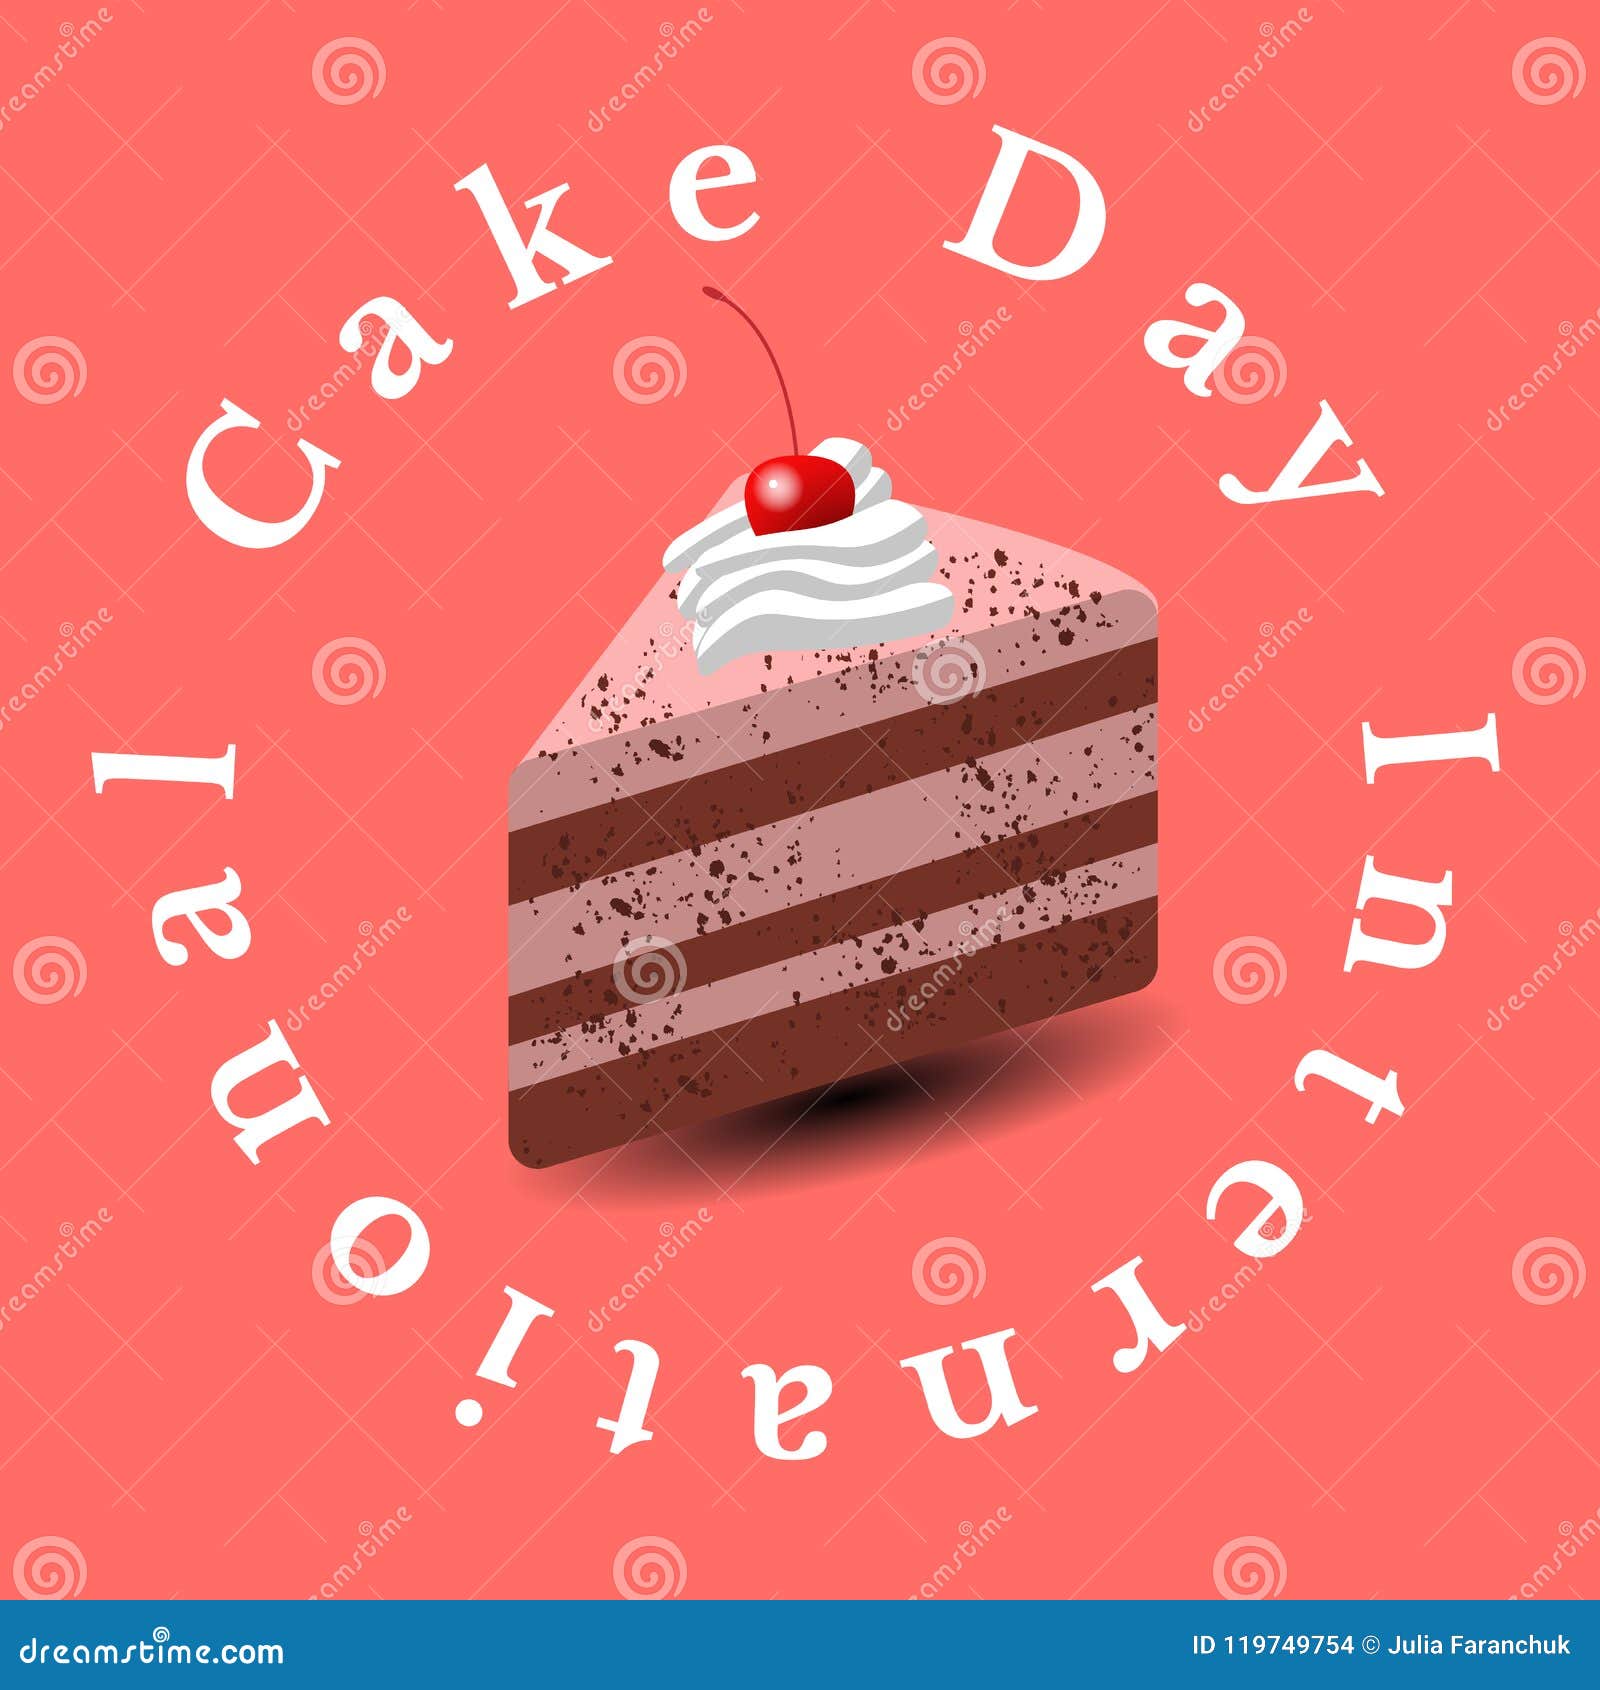 Día Internacional De La Torta Pedazo De Torta, Postre, Pasteles, Cereza  Fondo Rosado Del Estilo Del Arte Pop Stock de ilustración - Ilustración de  bandera, cocina: 119749754